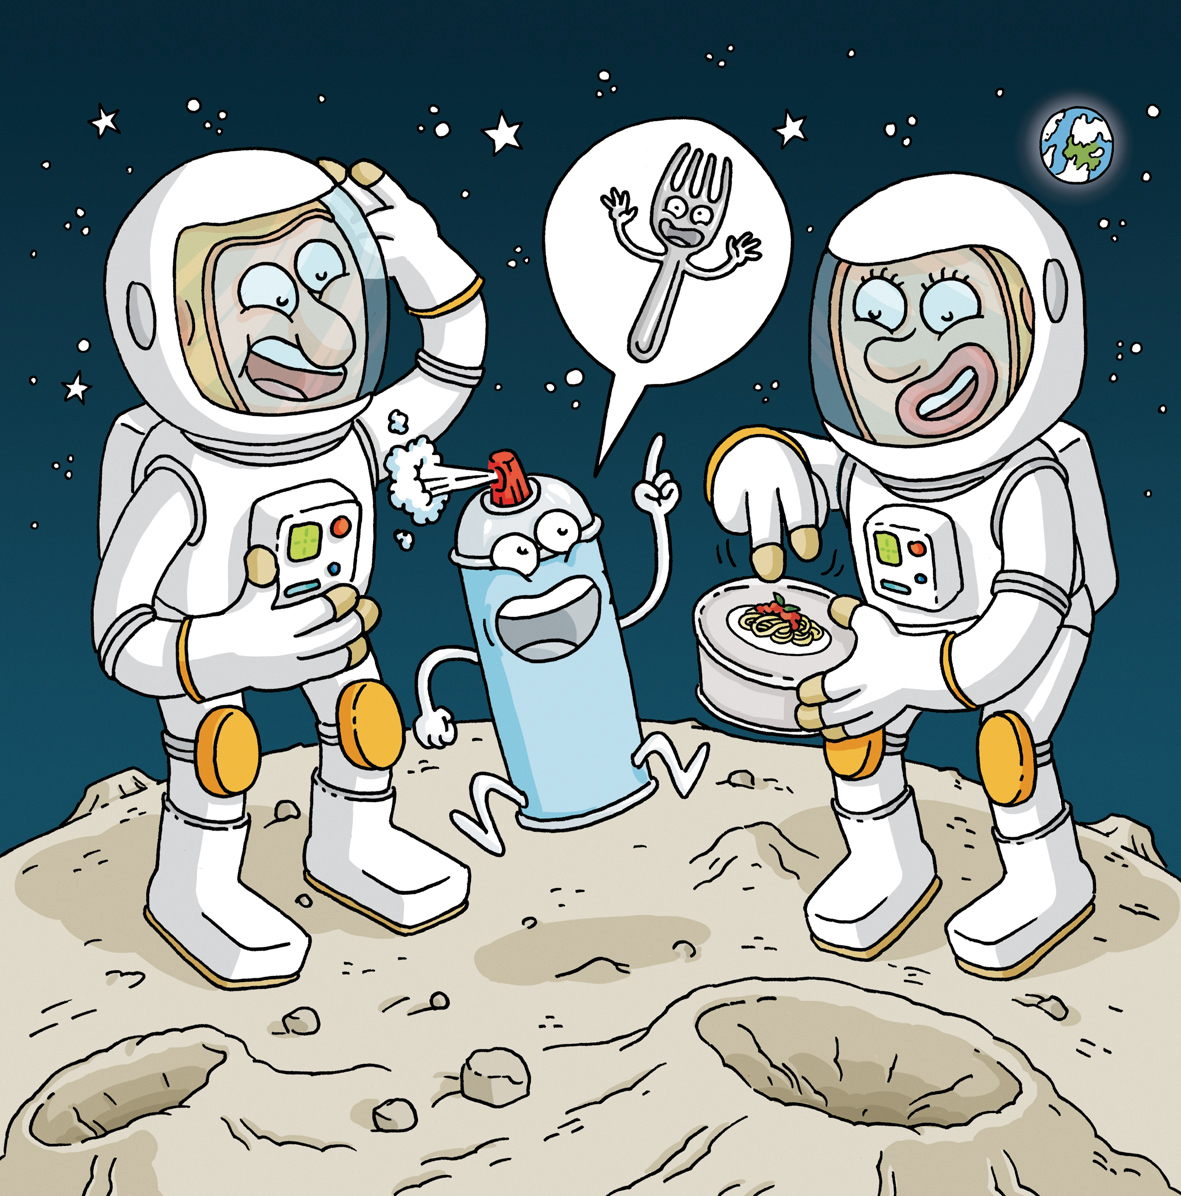 Classe IV dell’Istituto Italiano Statale Comprensivo di Atene – GreciaC’era una bomboletta d’ossigeno sulla Luna,che non voleva restare digiunaforchetta voleva diventareper stare con gli astronauti a mangiarequella stralunata bomboletta sulla Luna.